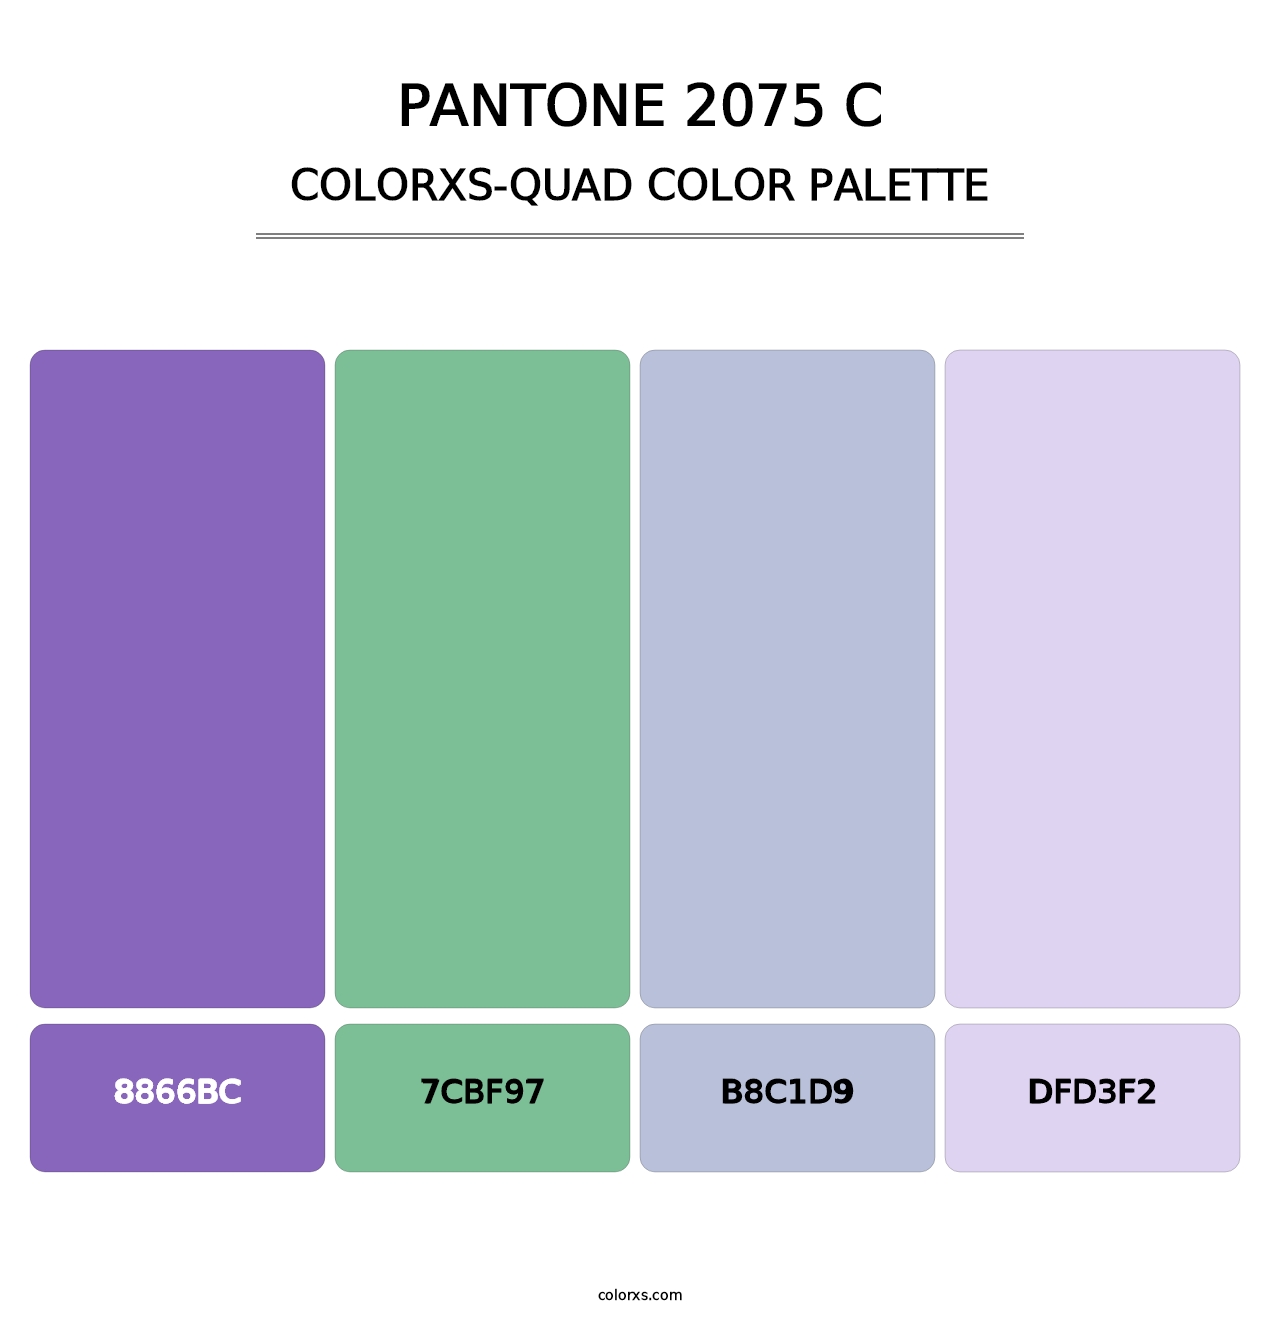 PANTONE 2075 C - Colorxs Quad Palette